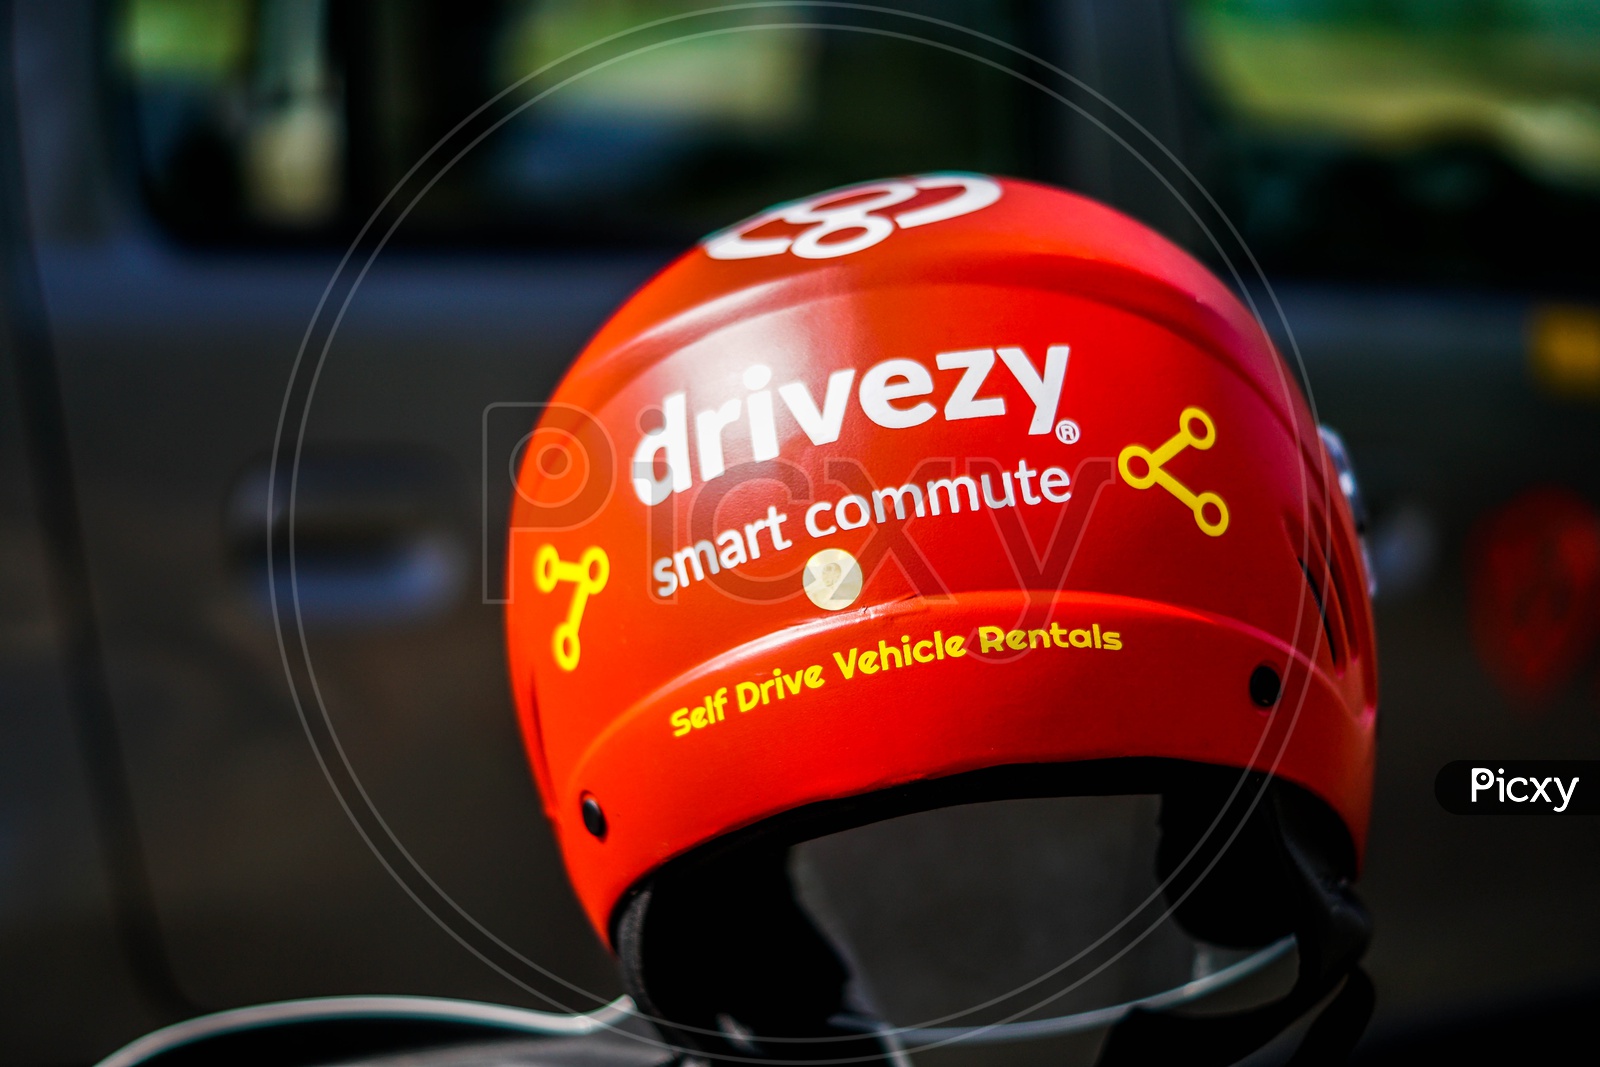 Drivezy helmet